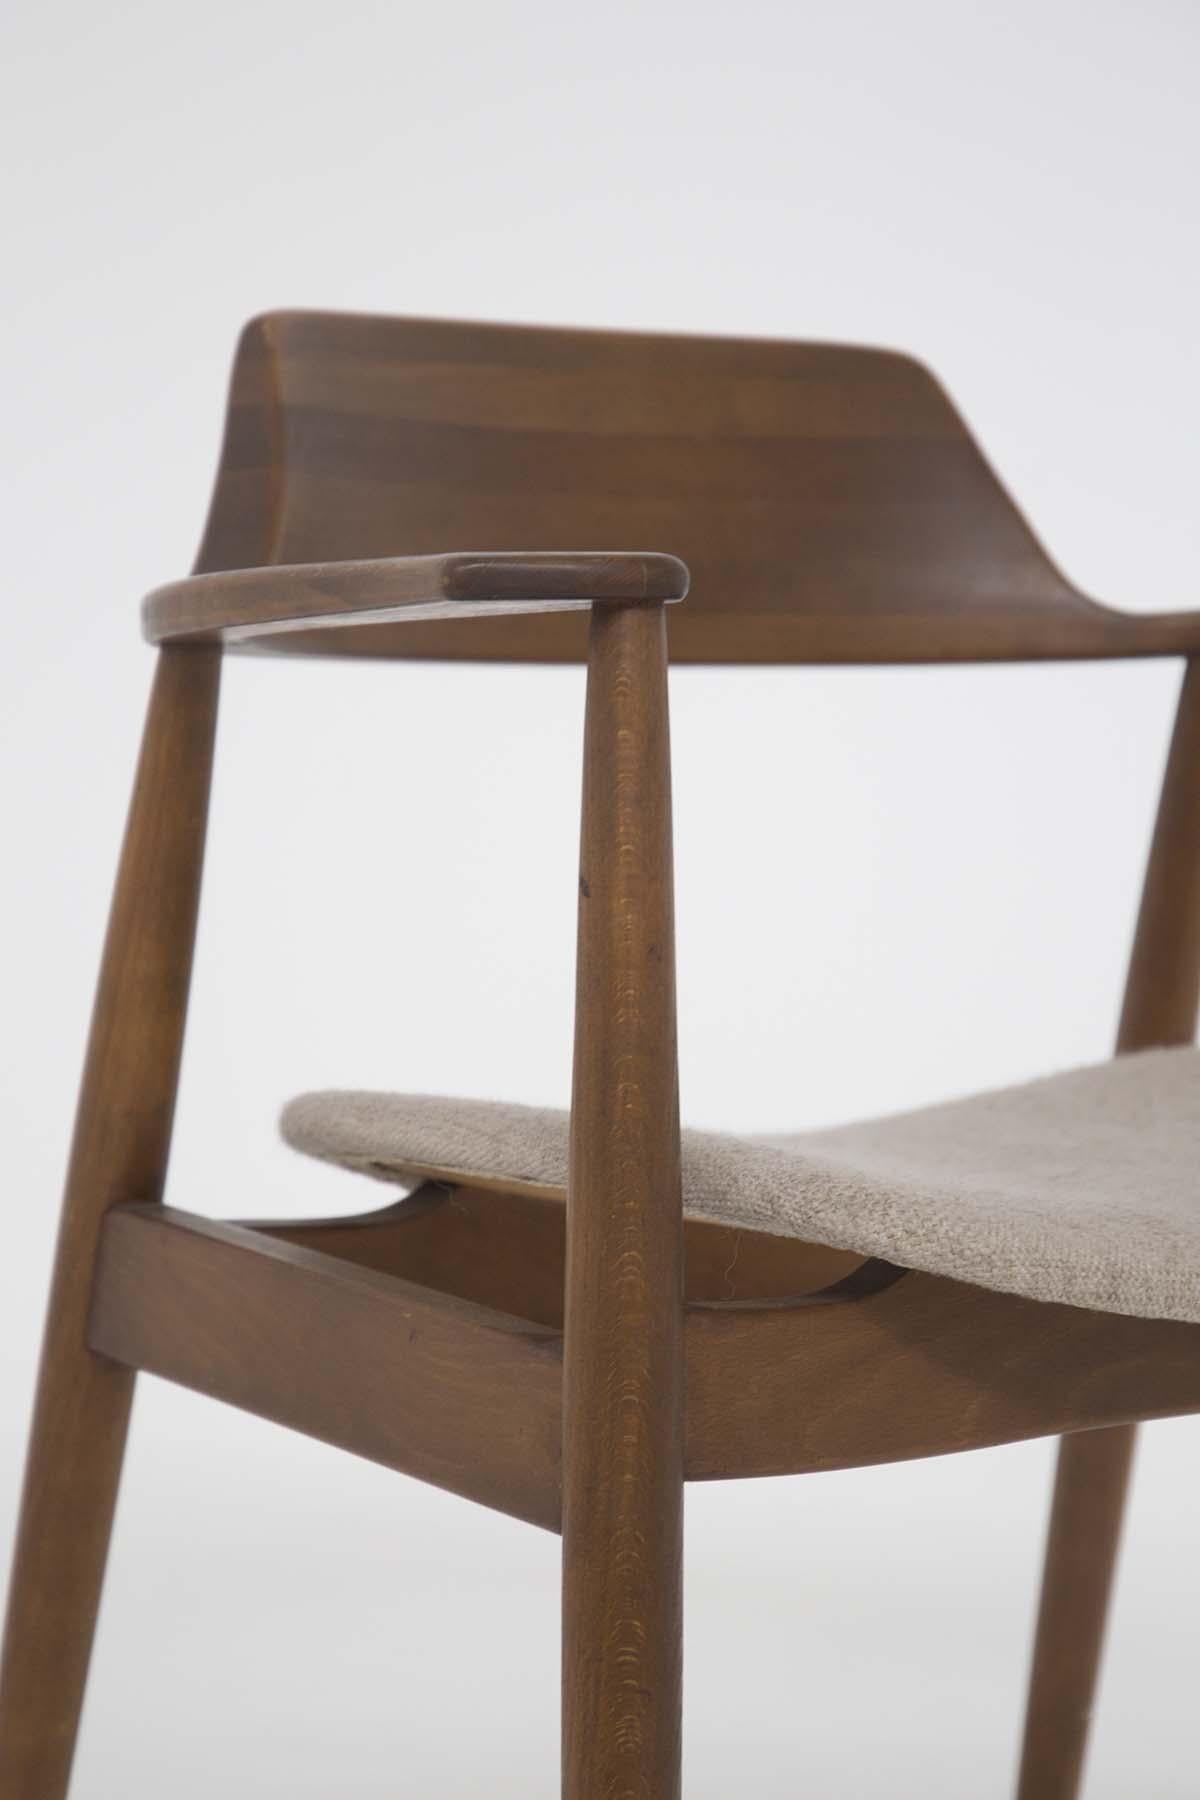 Atemberaubender amerikanischer Sessel aus den 1950er Jahren, der Phillip Lloyd Powell zugeschrieben wird.
Der Sessel wurde aus edlem Holz und beigem Stoff gefertigt, ist im Originalzustand und wurde nie restauriert. 
Der Sessel von Phillip Lloyd